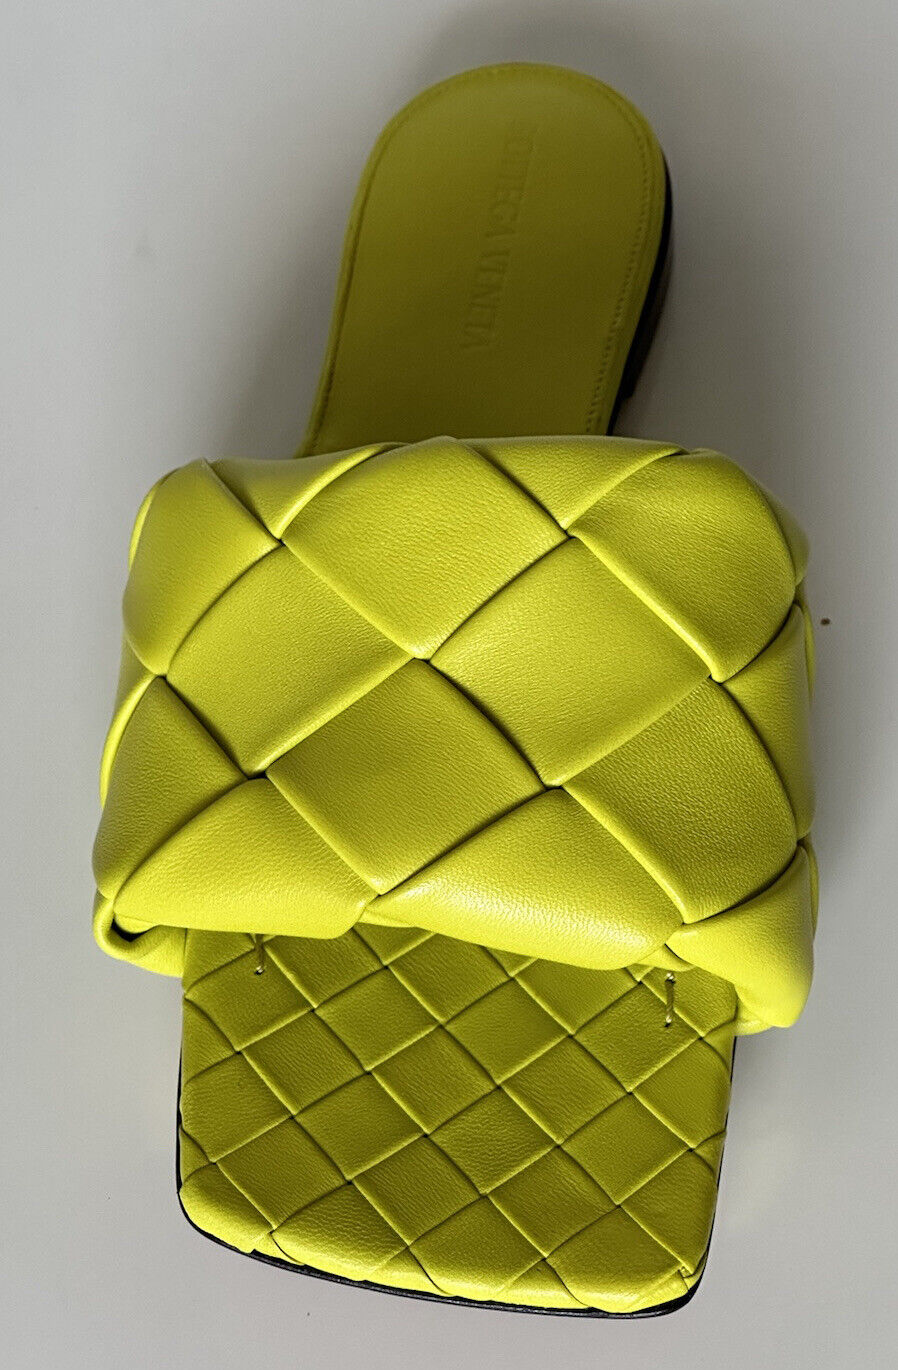 NWT 1350 долларов США Bottega Veneta Желтые лимонные сандалии на плоской подошве 9 США (39 евро) 608853 